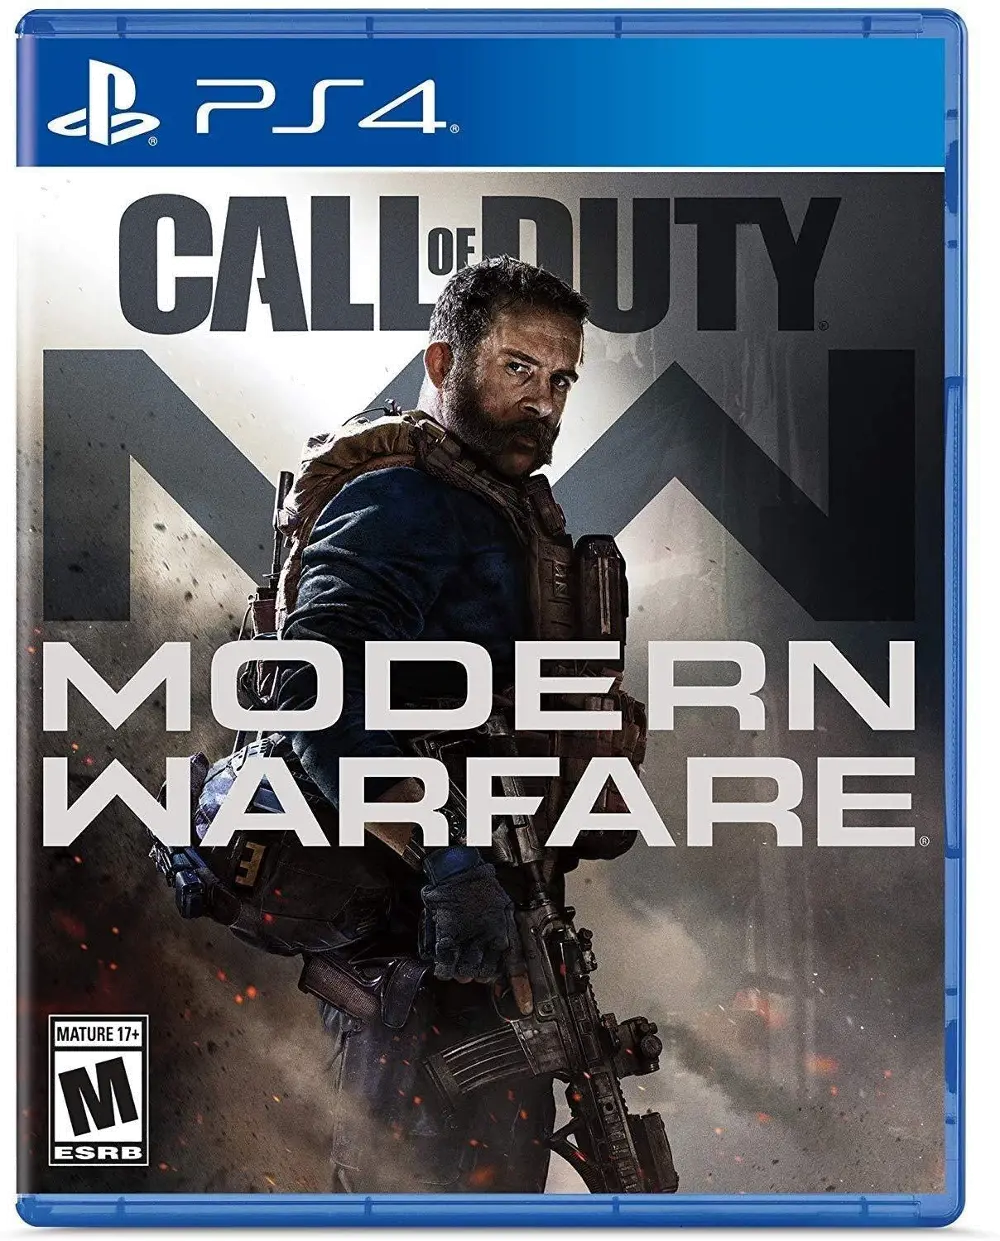 PS4/MODERN_WARFARE19 Call of Duty: Modern Warfare 2019 - PS4-1